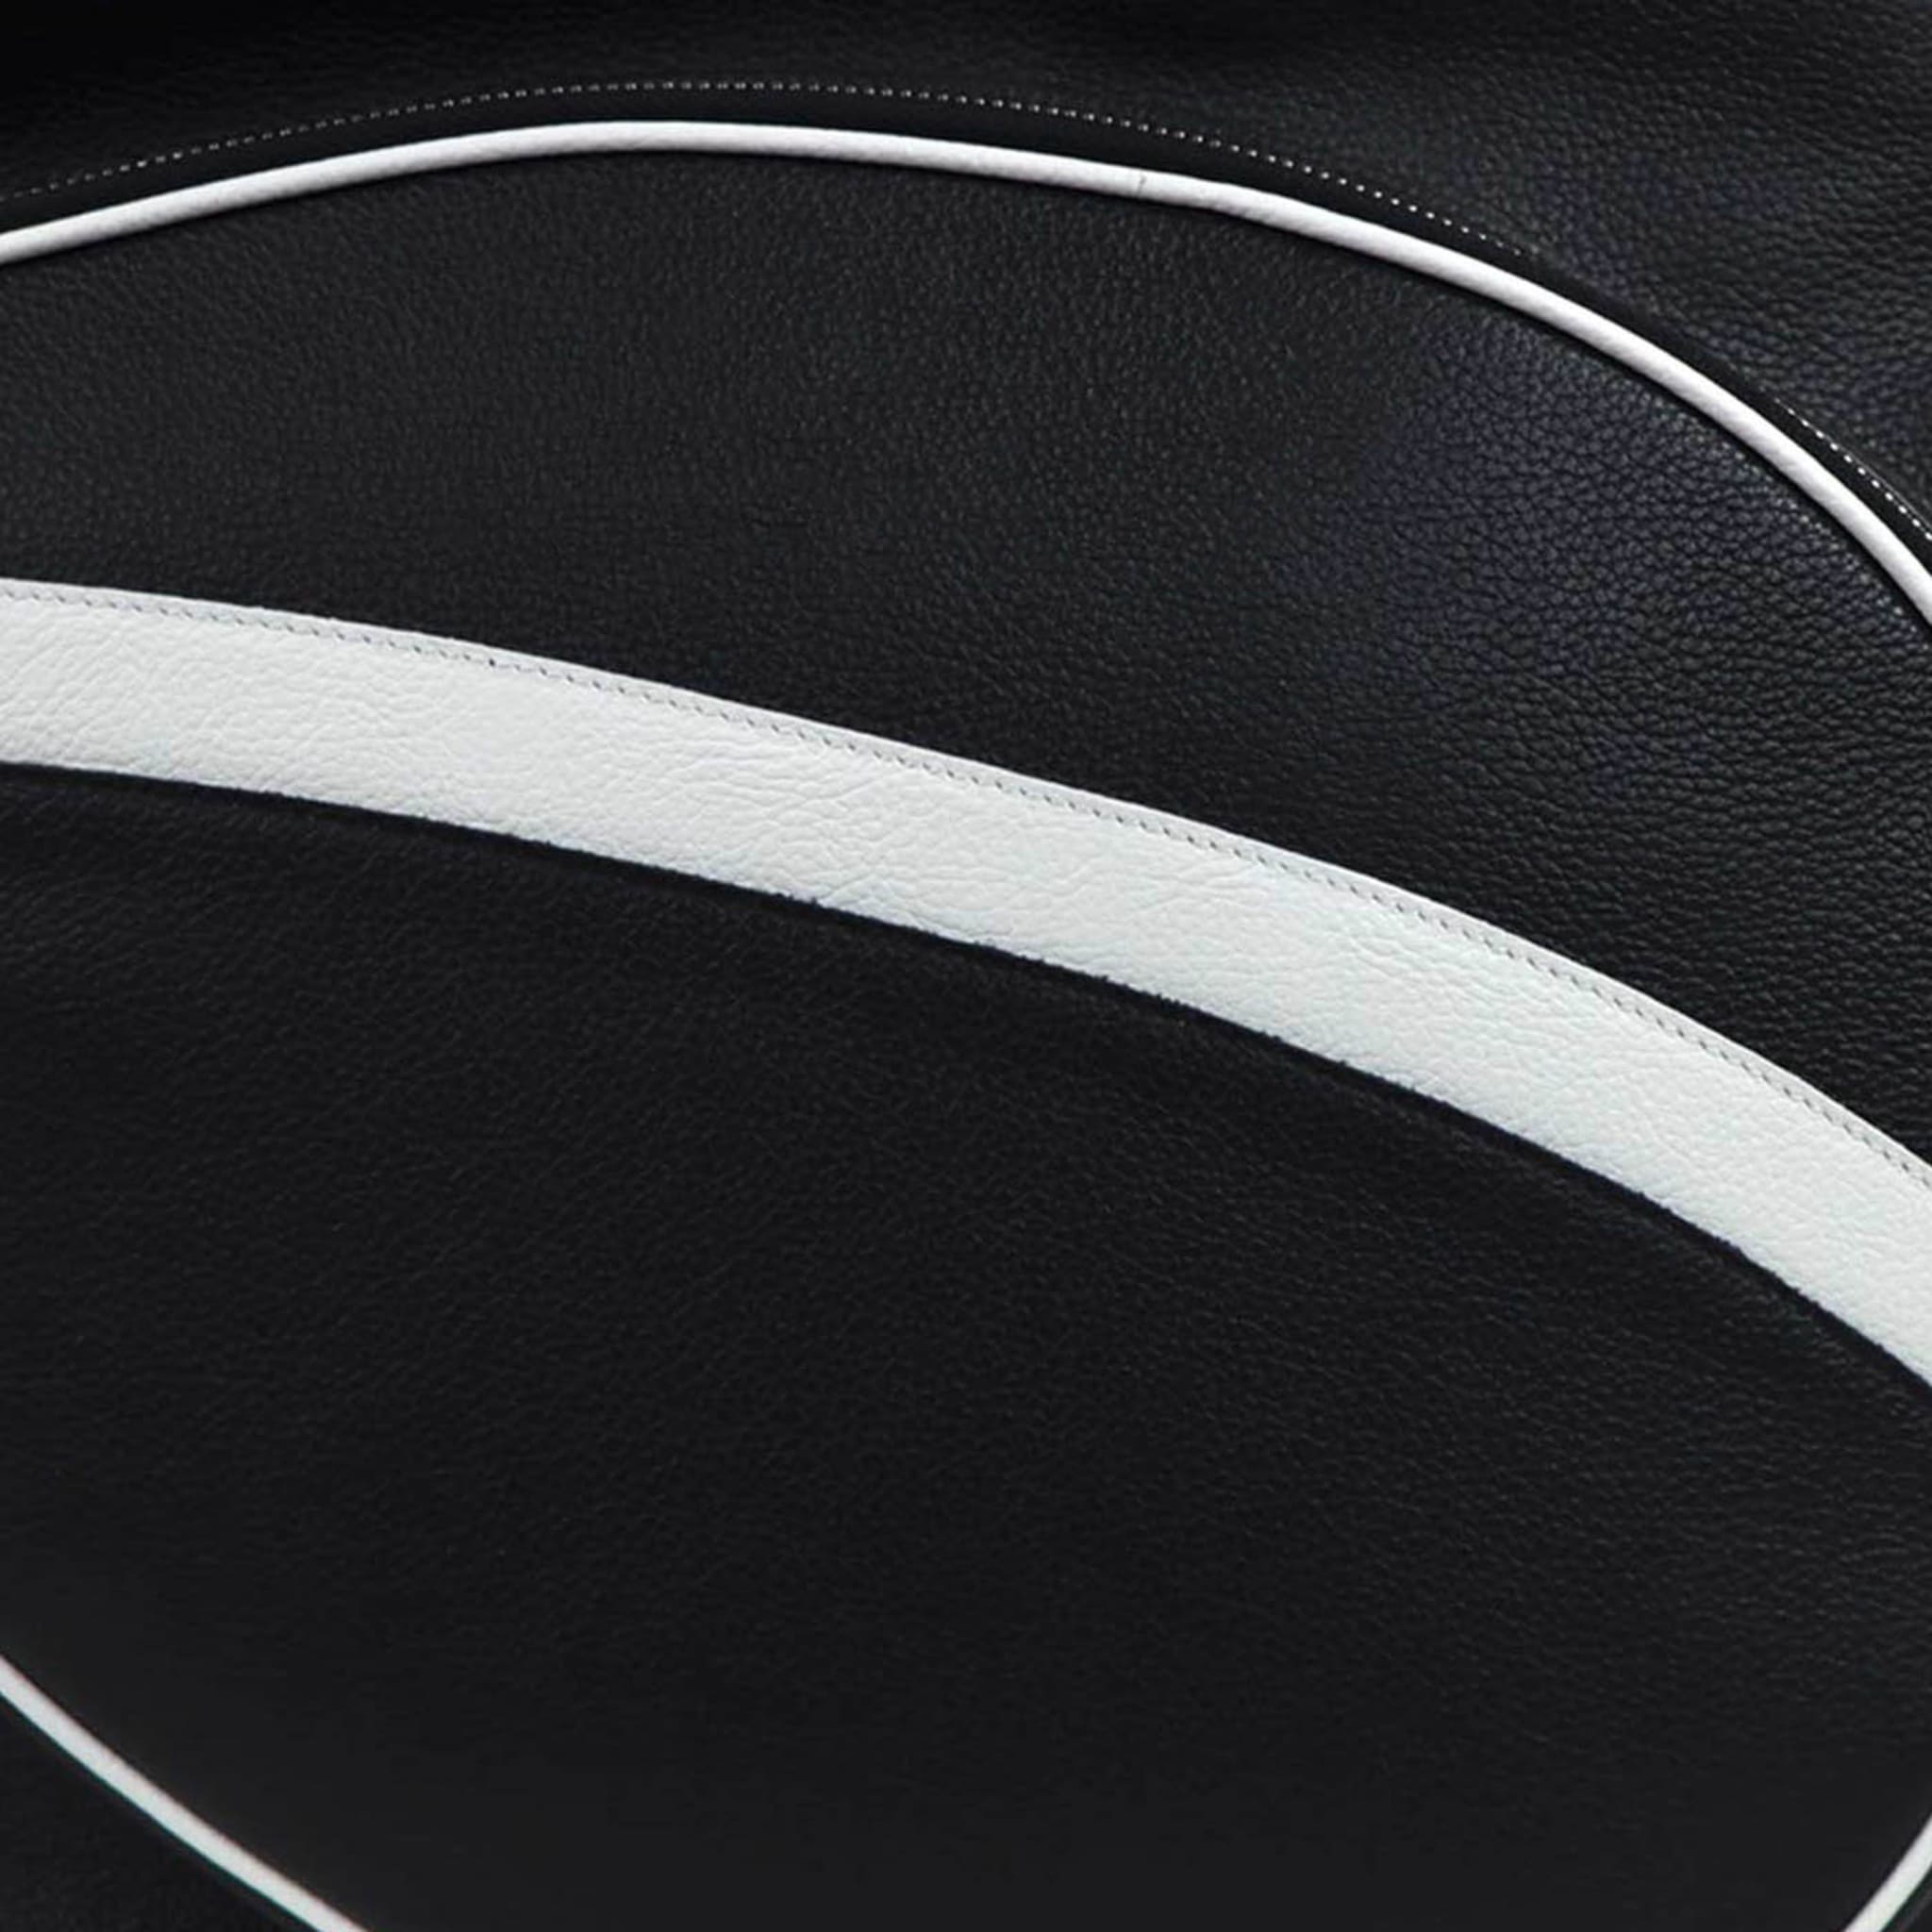 Sac Sport noir et blanc avec pochette en forme de raquette de tennis - Vue alternative 2